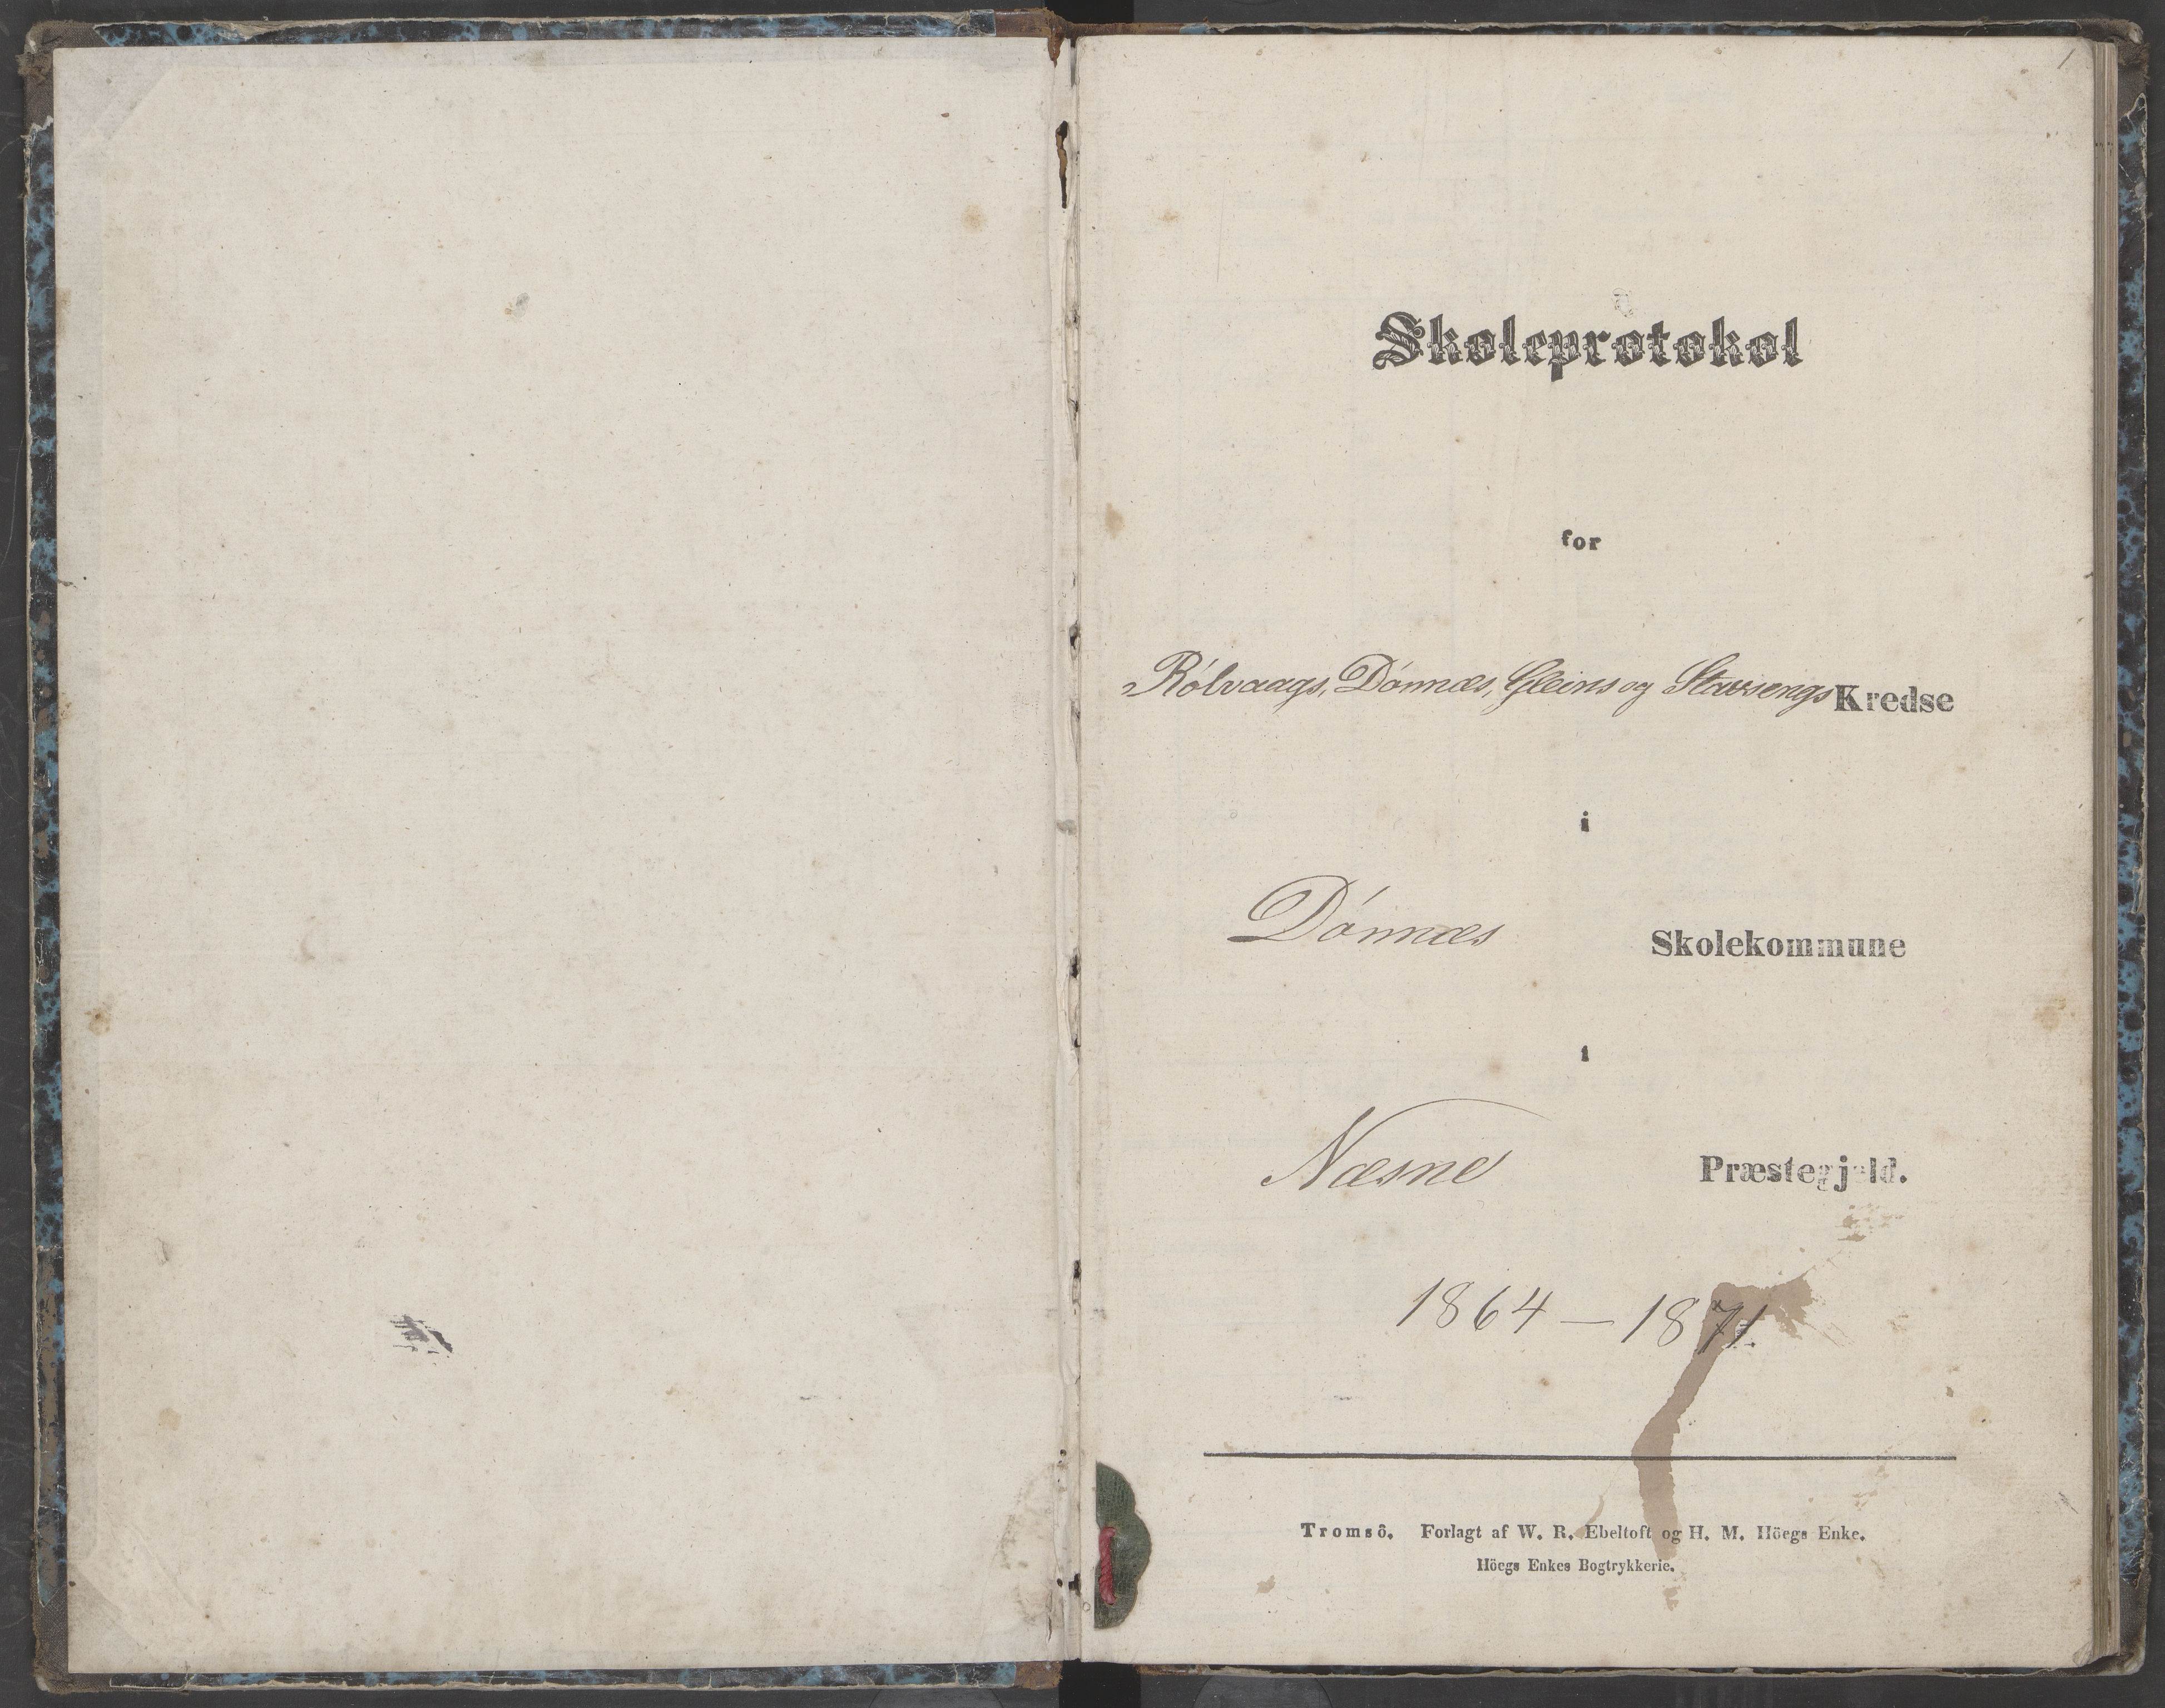 AIN, Dønna kommune. Dønnes fastskole, 442/L0002: Skoleprotokoll, 1864-1871, s. 1